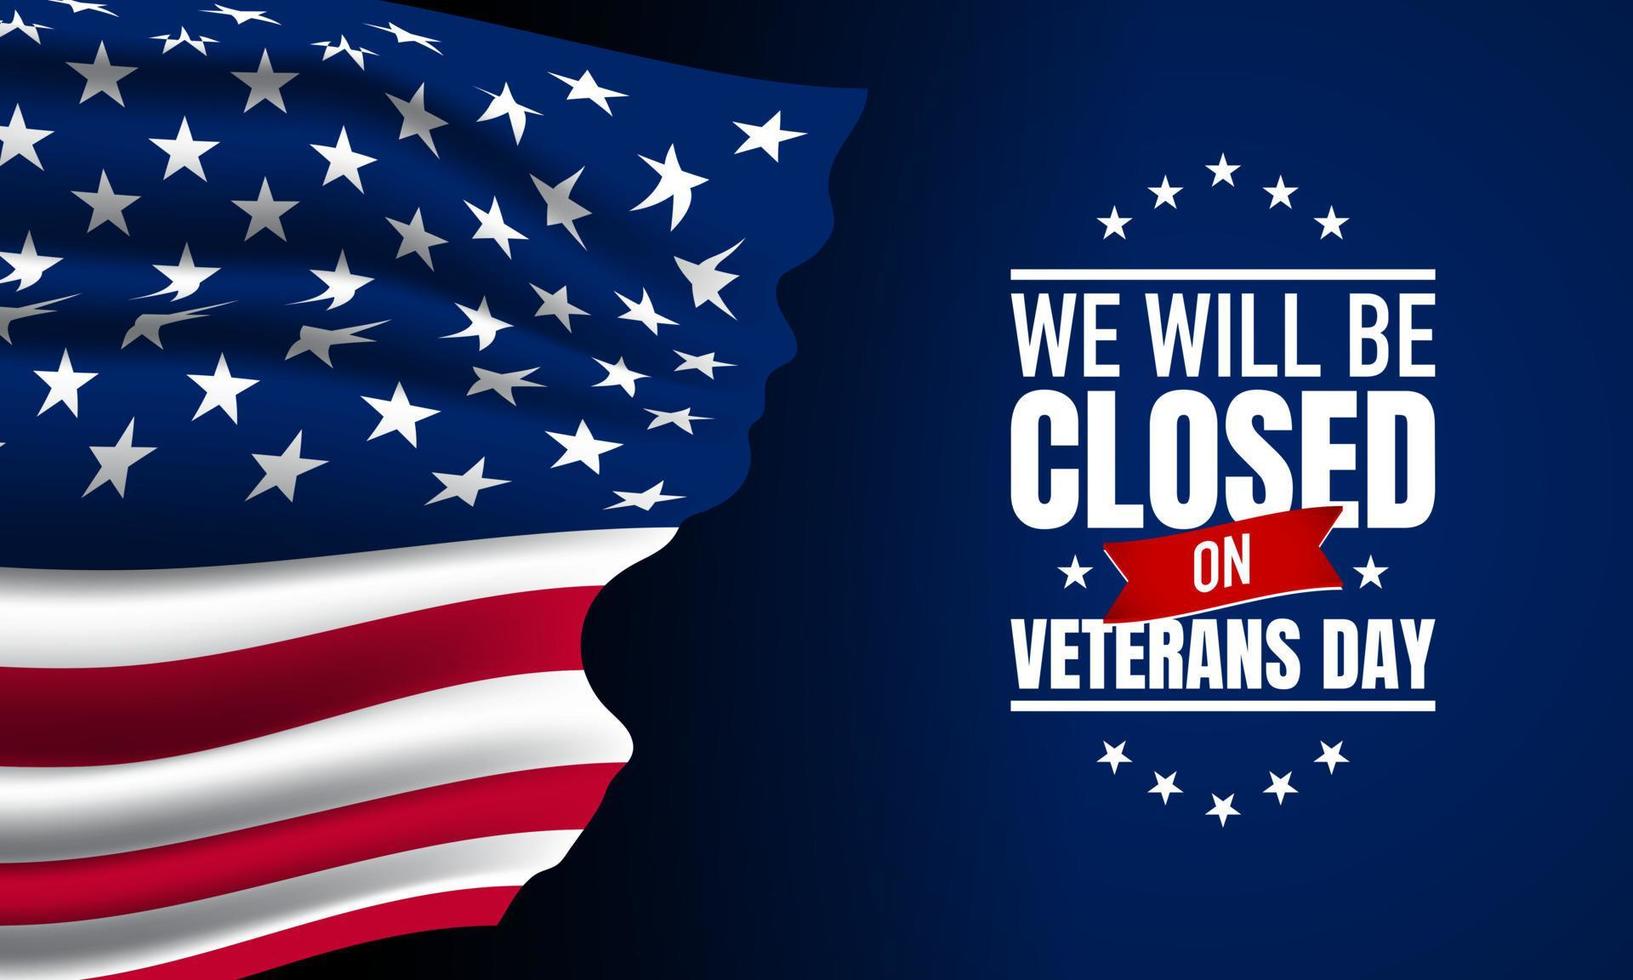 diseño de fondo del día de los veteranos. estaremos cerrados el día de los veteranos. vector